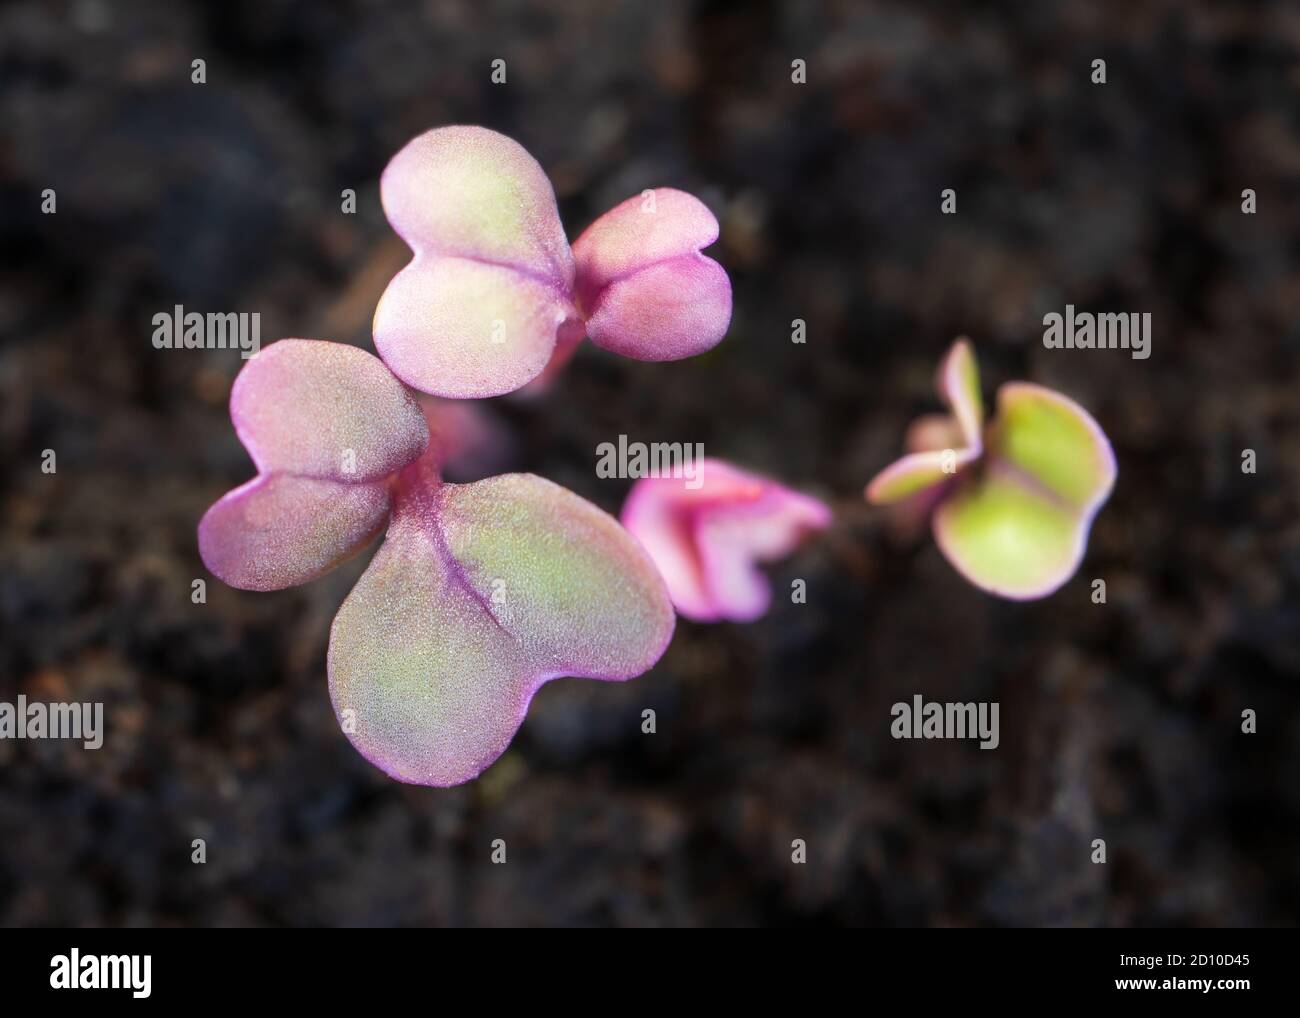 Les semis de navet viennent d'être germés. (Brassica rapa subsp. Rapa) graines de germe de Turnpip du Haut violet. Vue de dessus de minuscules feuilles violettes et vertes. Banque D'Images